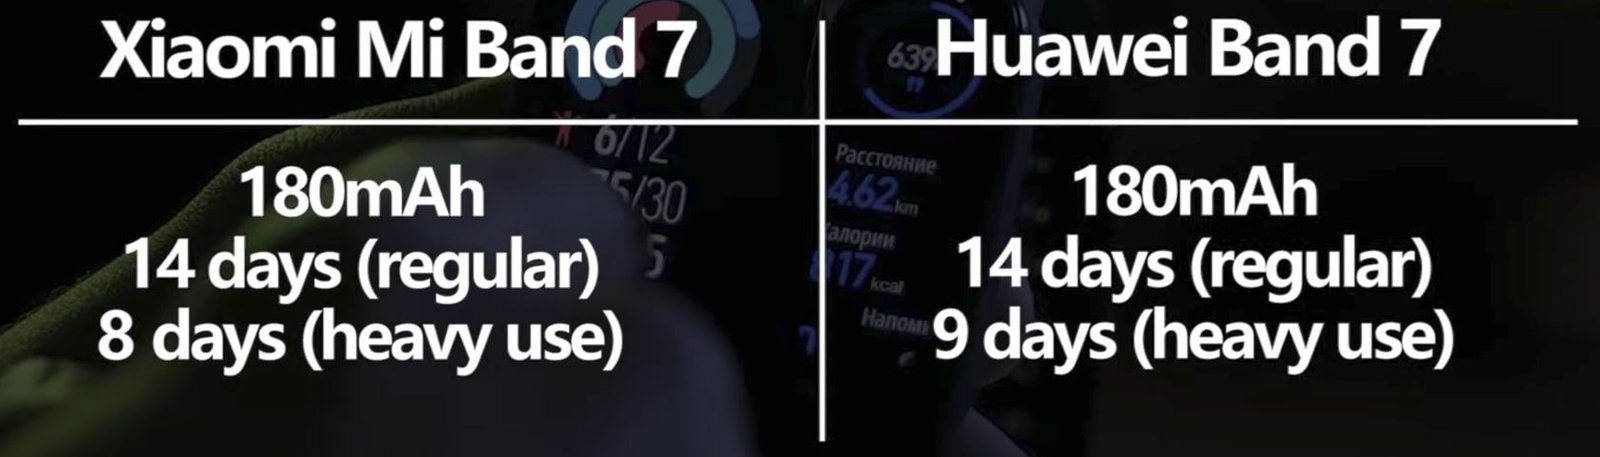 Xiaomi Mi Band 7 vs Huawei Band 7 5